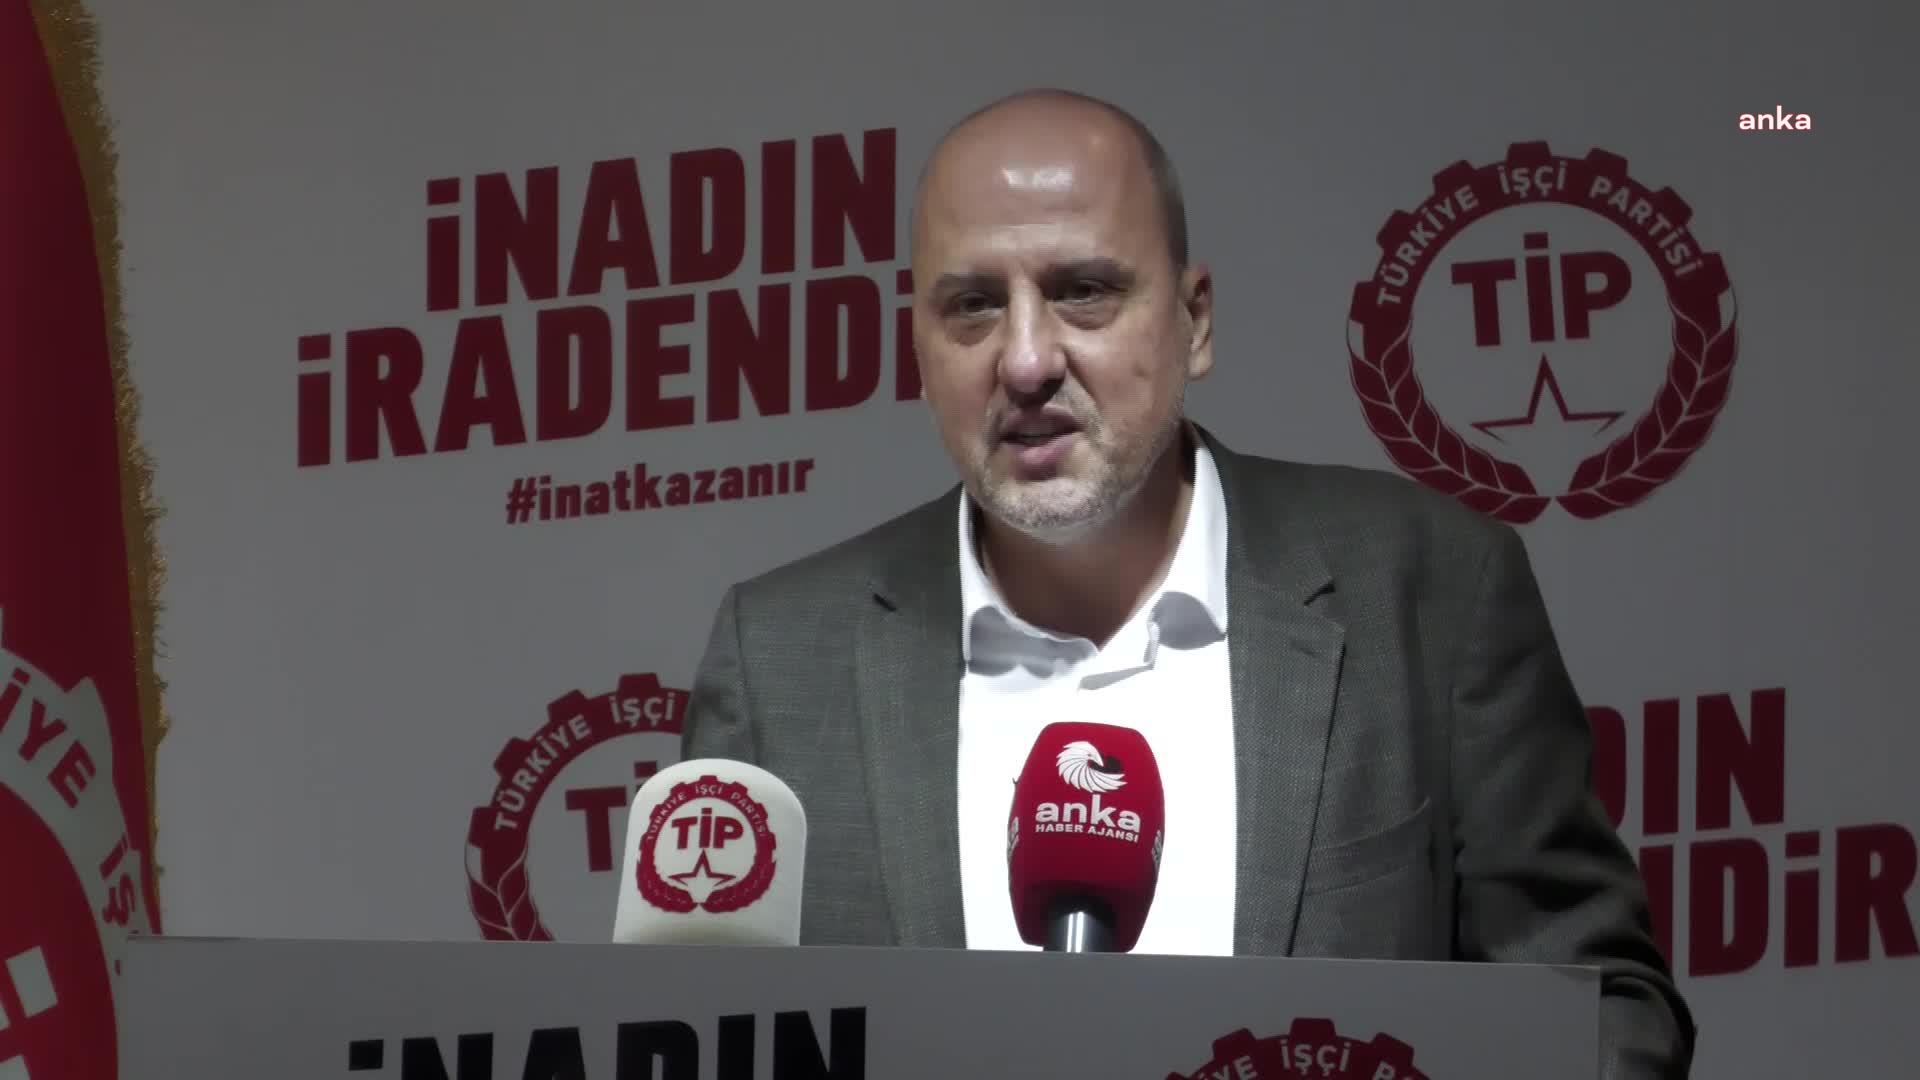 TİP Milletvekili Ahmet Şık, Muharrem Aksem'in ölümünü Soylu'ya sordu: "Bilgiler çelişiyor"